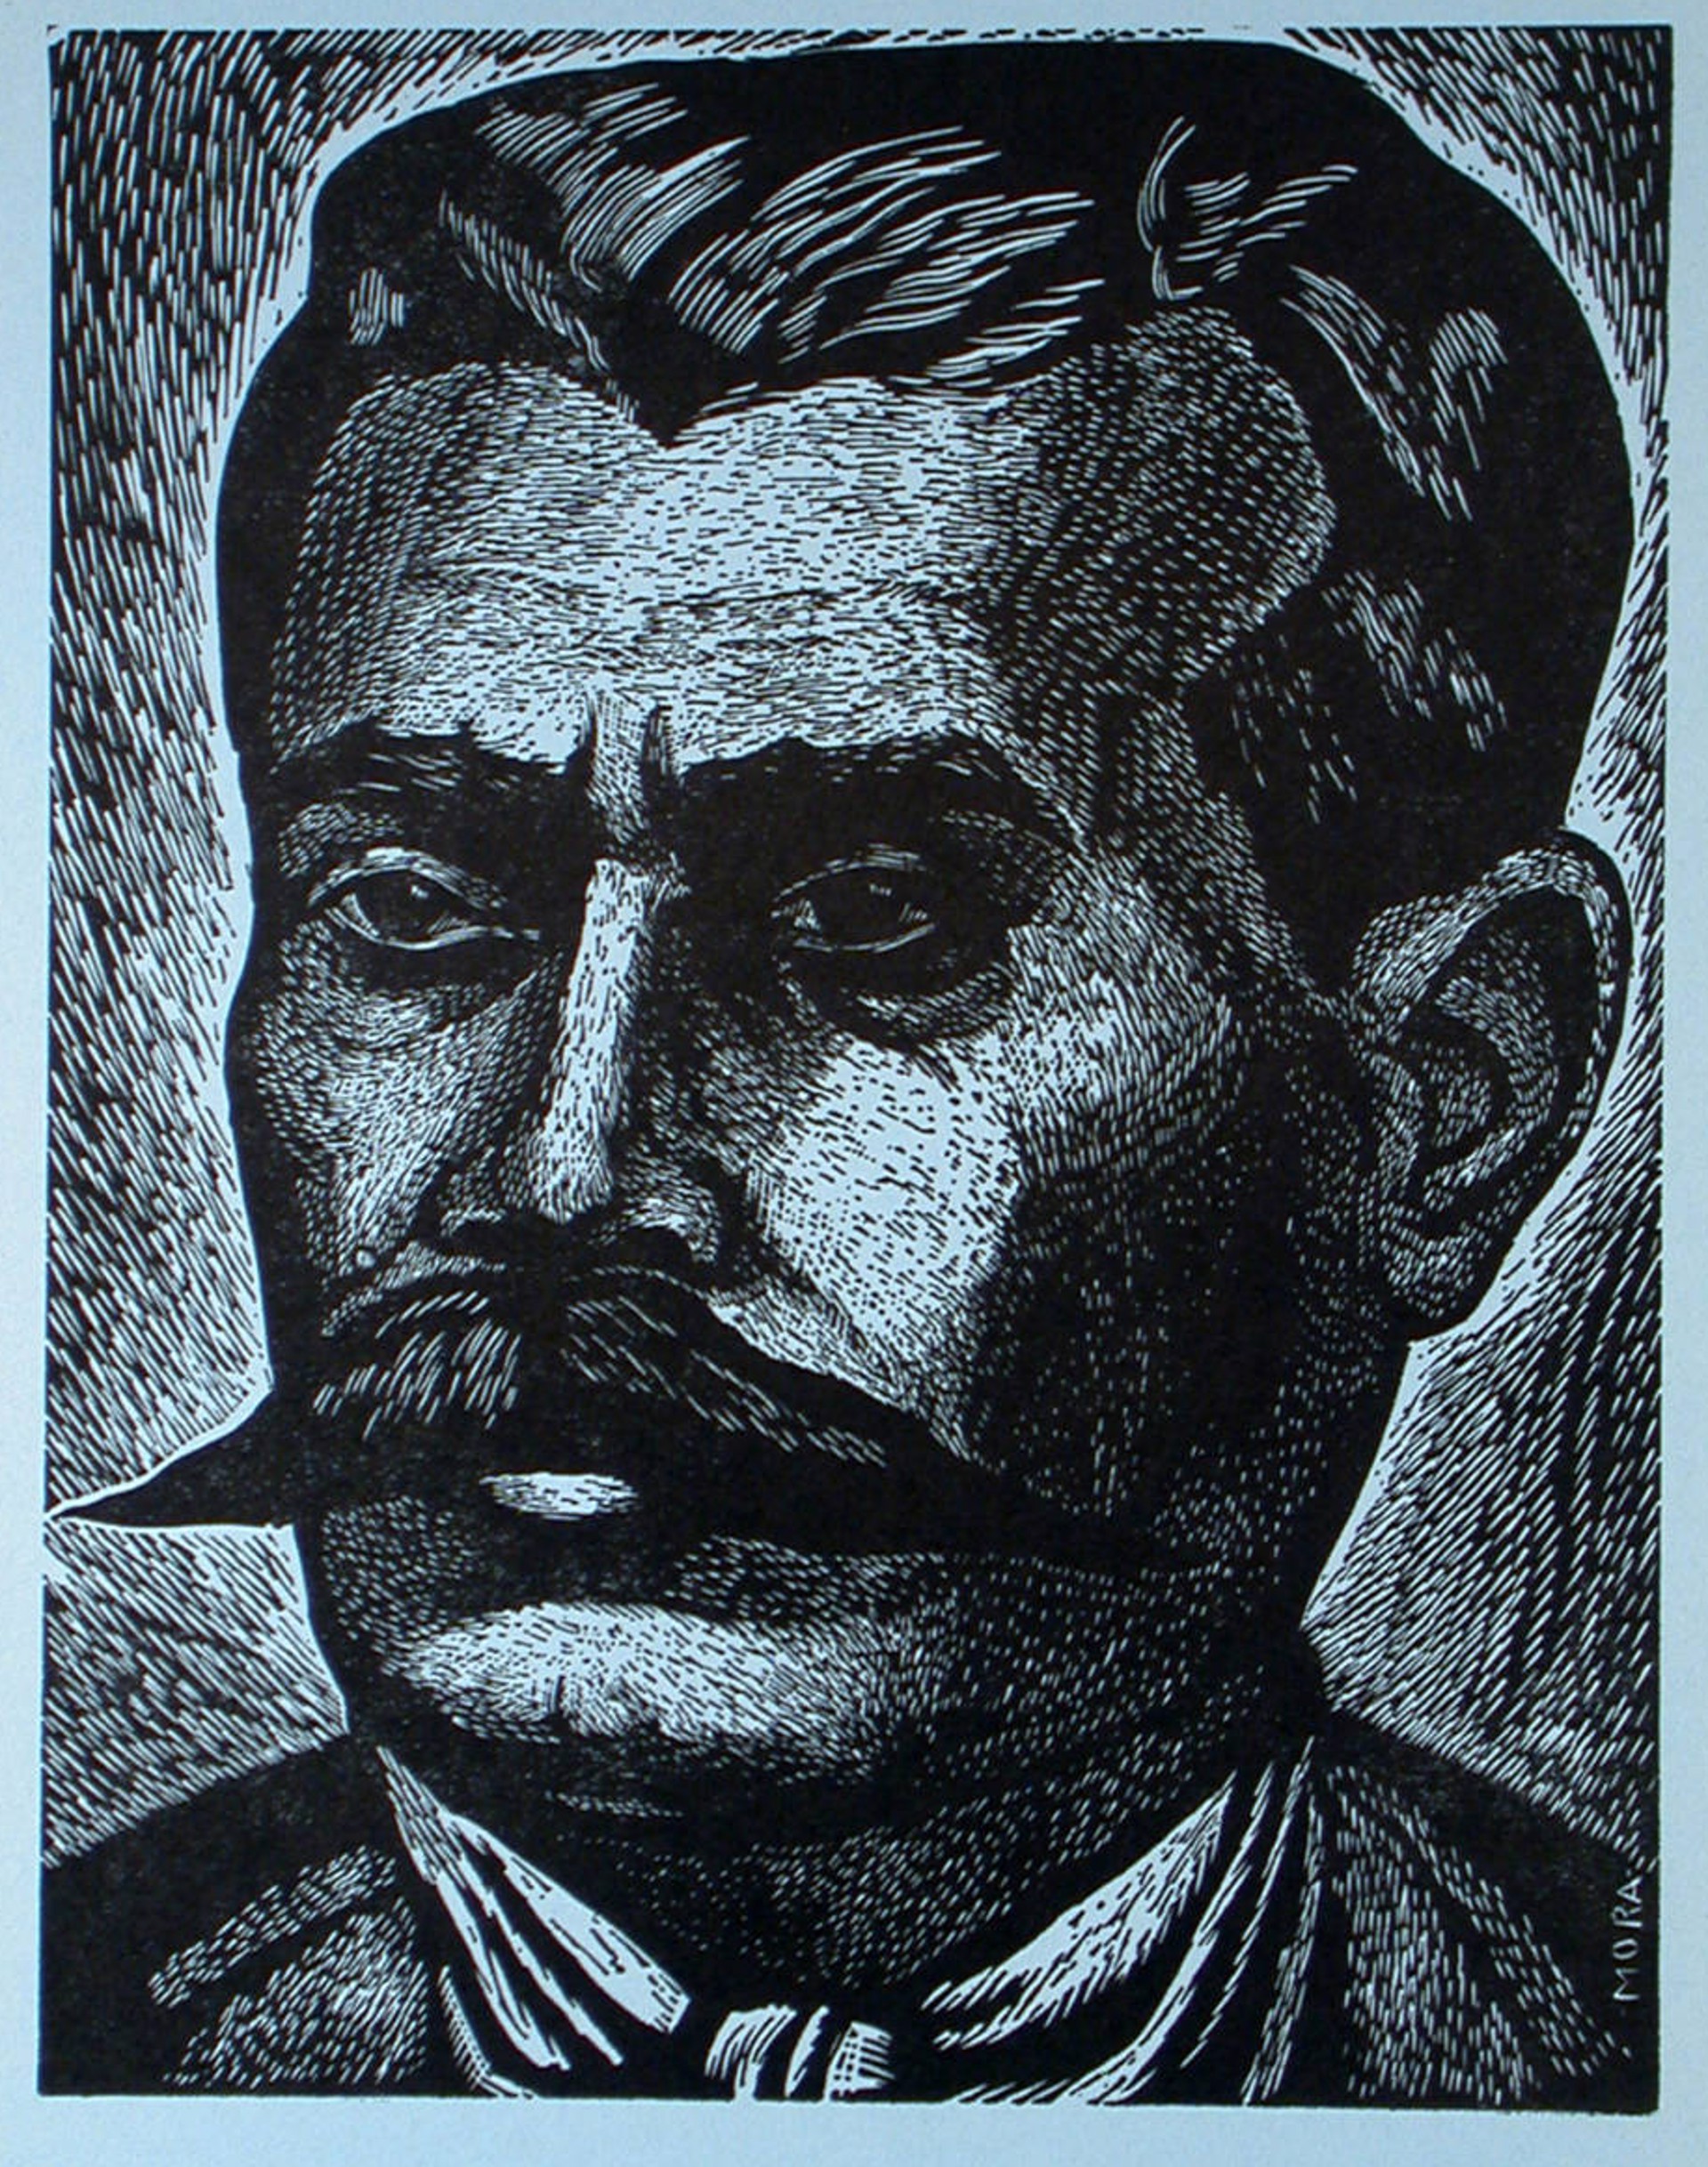 Emiliano Zapata, Lider de la Revolución Agraria by Francisco Mora